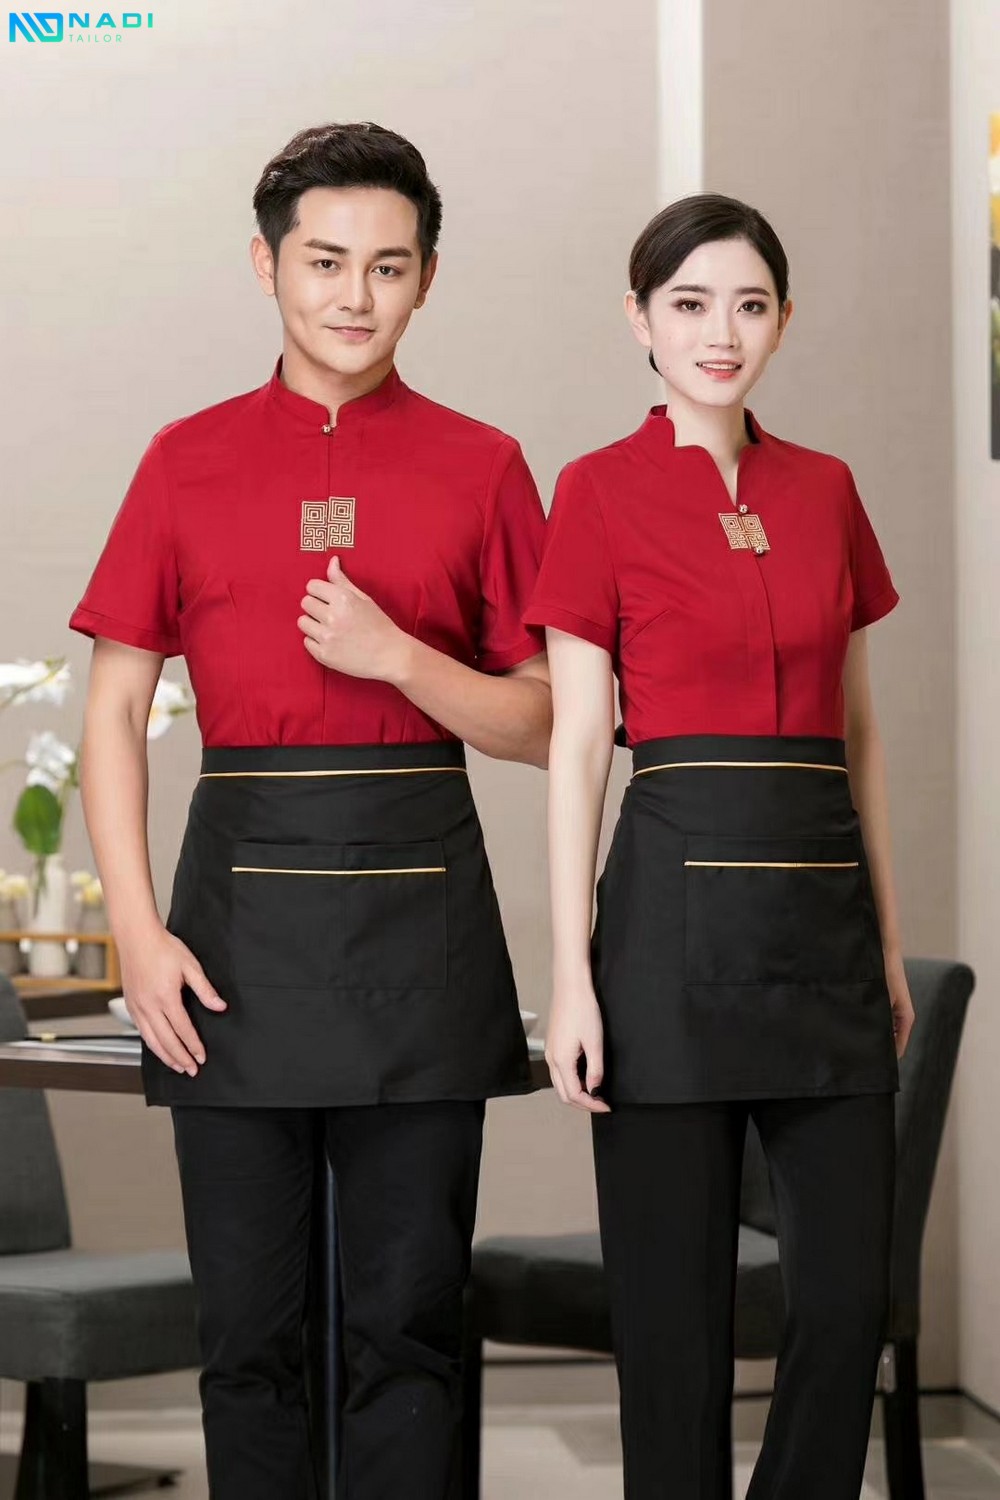 Tìm may đồng phục nhà hàng khách sạn Tân Phú, Tân Bình, Phú Nhuận, Bình Tân rồi nên chọn vải gì?